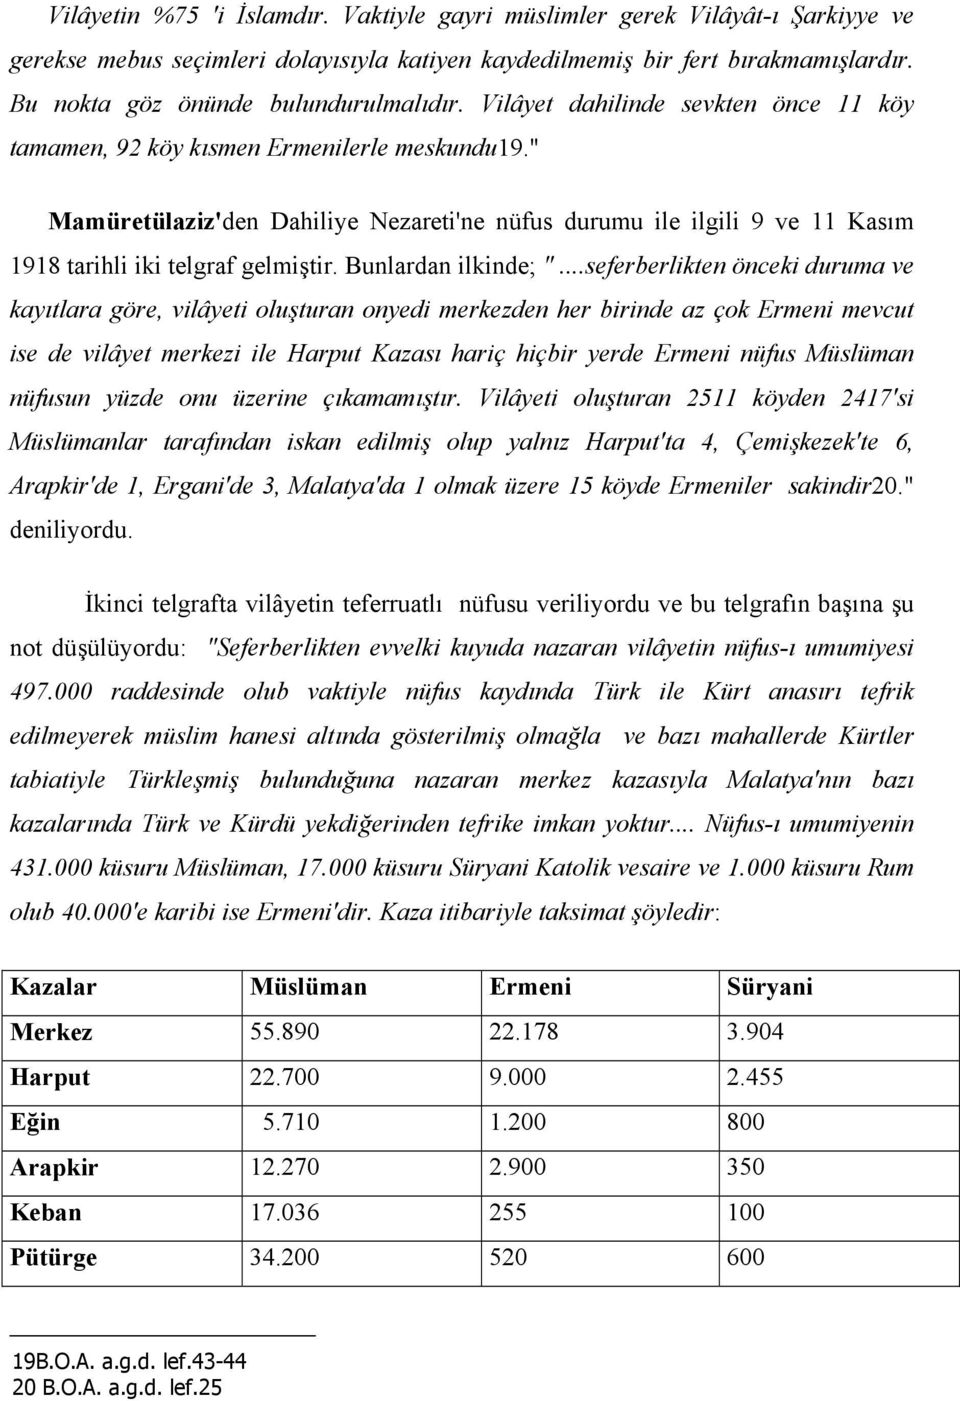 " Mamüretülaziz'den Dahiliye Nezareti'ne nüfus durumu ile ilgili 9 ve 11 Kasım 1918 tarihli iki telgraf gelmiştir. Bunlardan ilkinde; ".